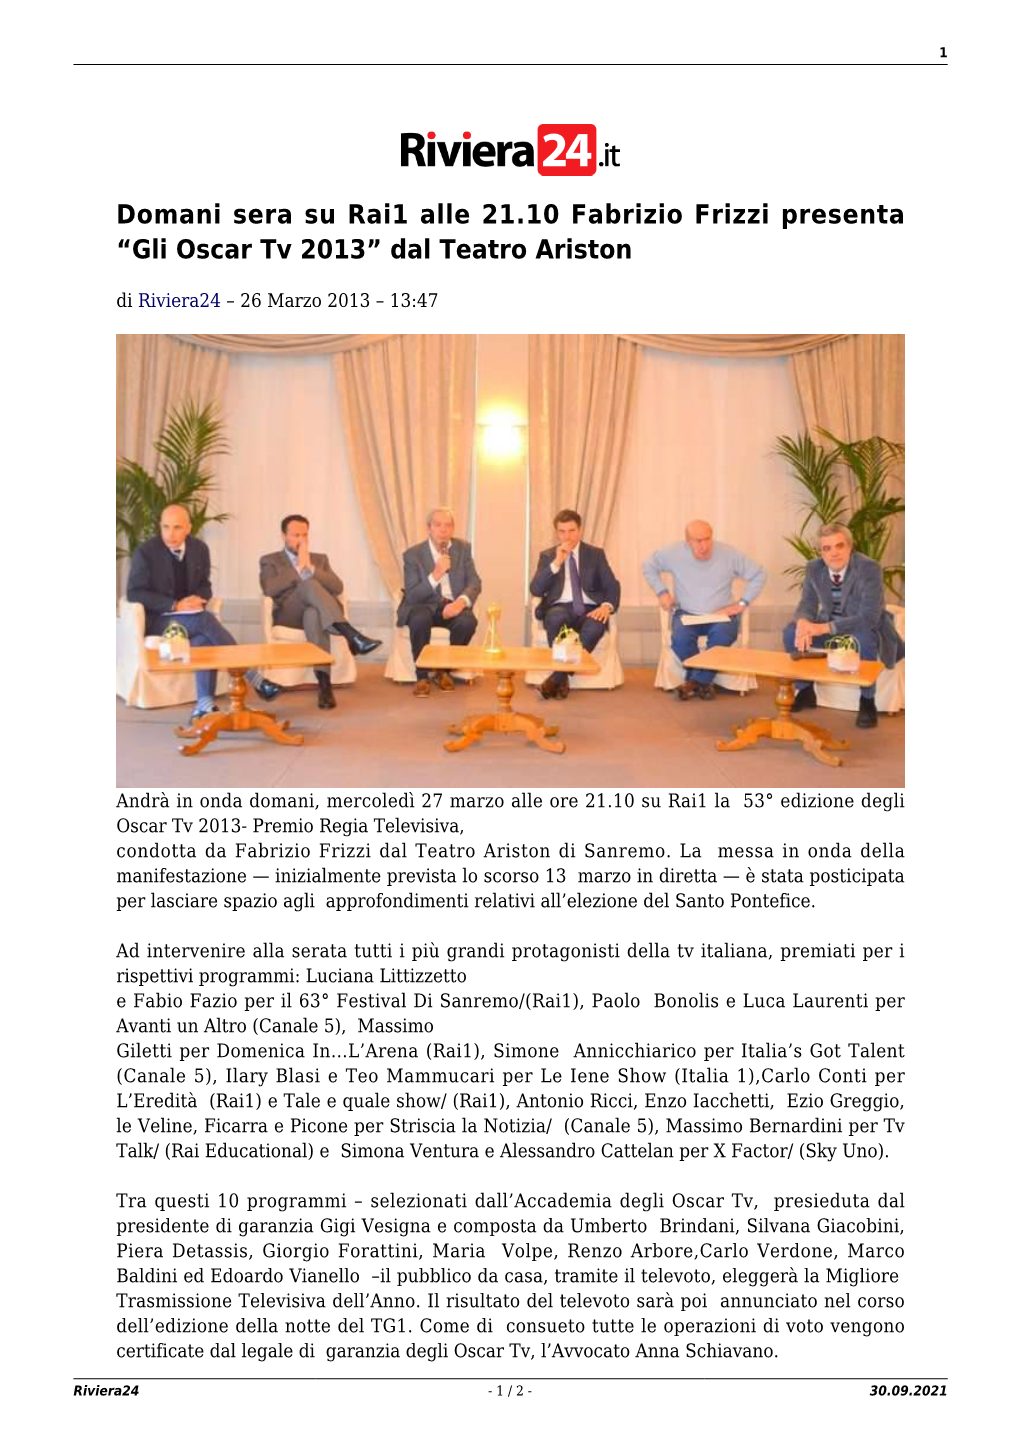 Domani Sera Su Rai1 Alle 21.10 Fabrizio Frizzi Presenta “Gli Oscar Tv 2013” Dal Teatro Ariston